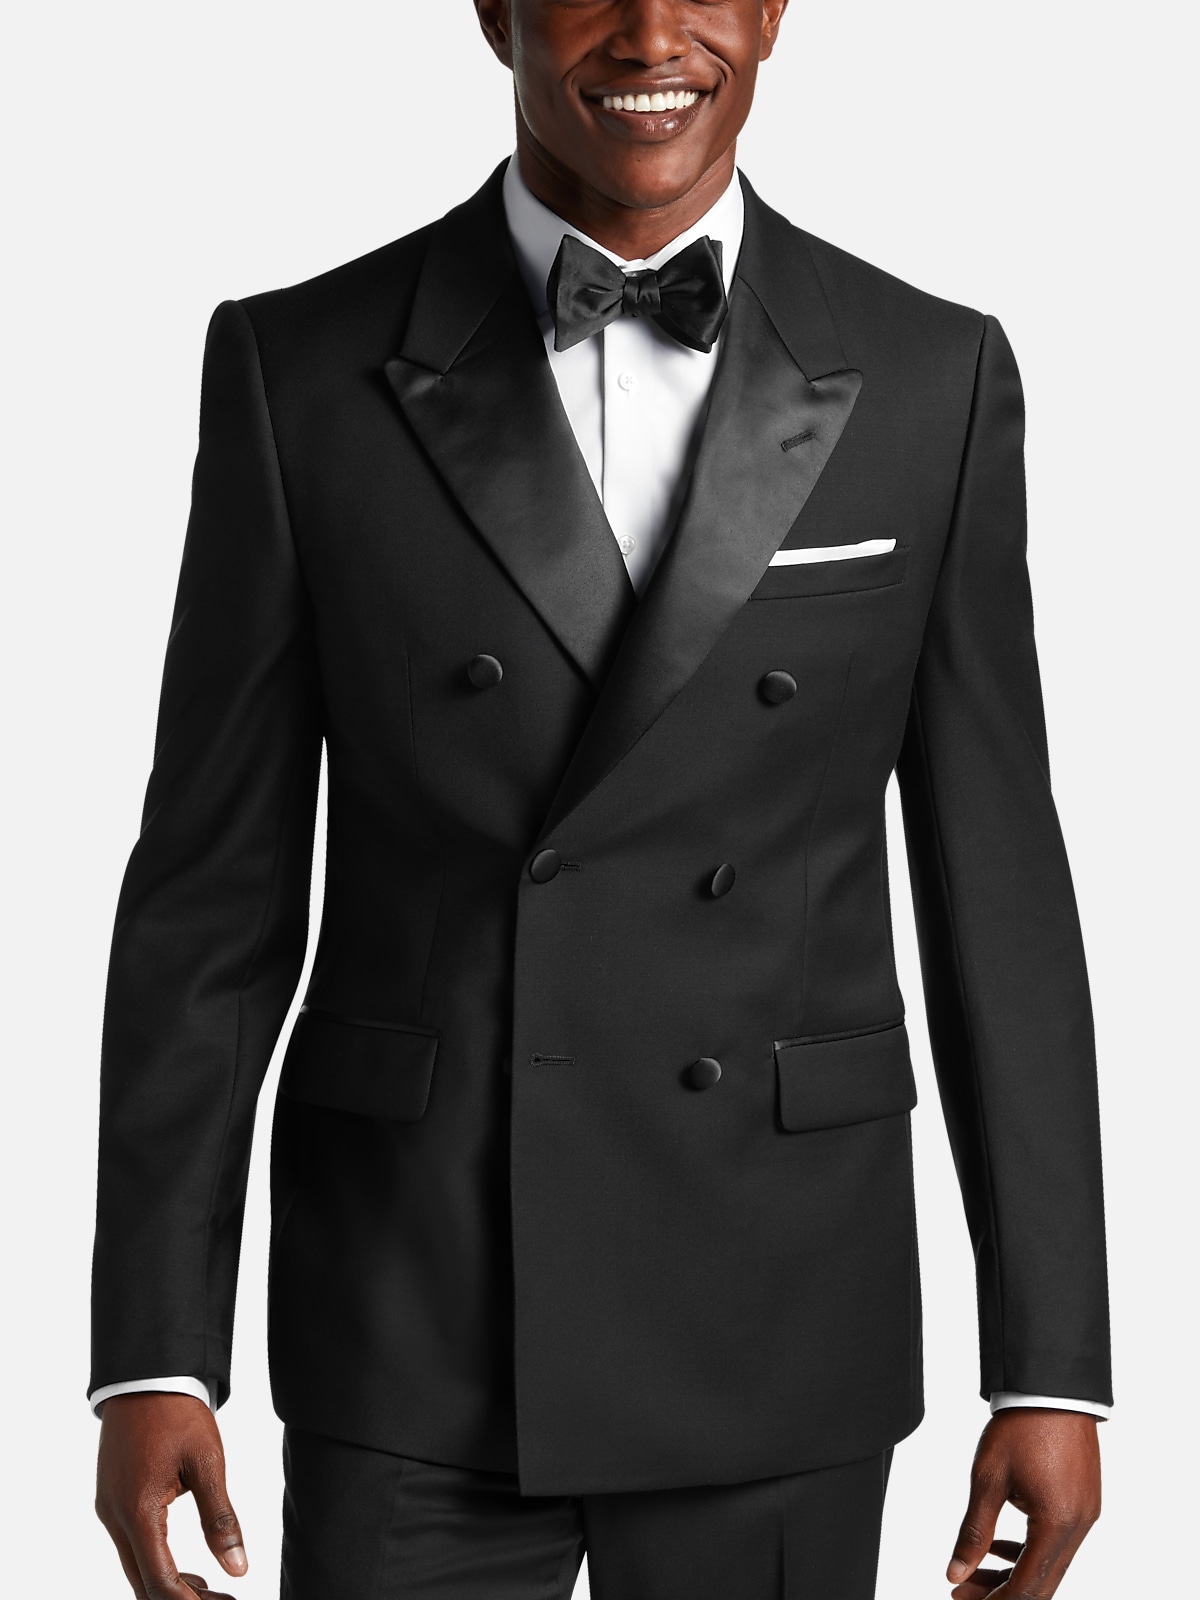 Bestfit Menswear  Men's Gray 2-Piece Single Breasted Notch Lapel Slim Suit